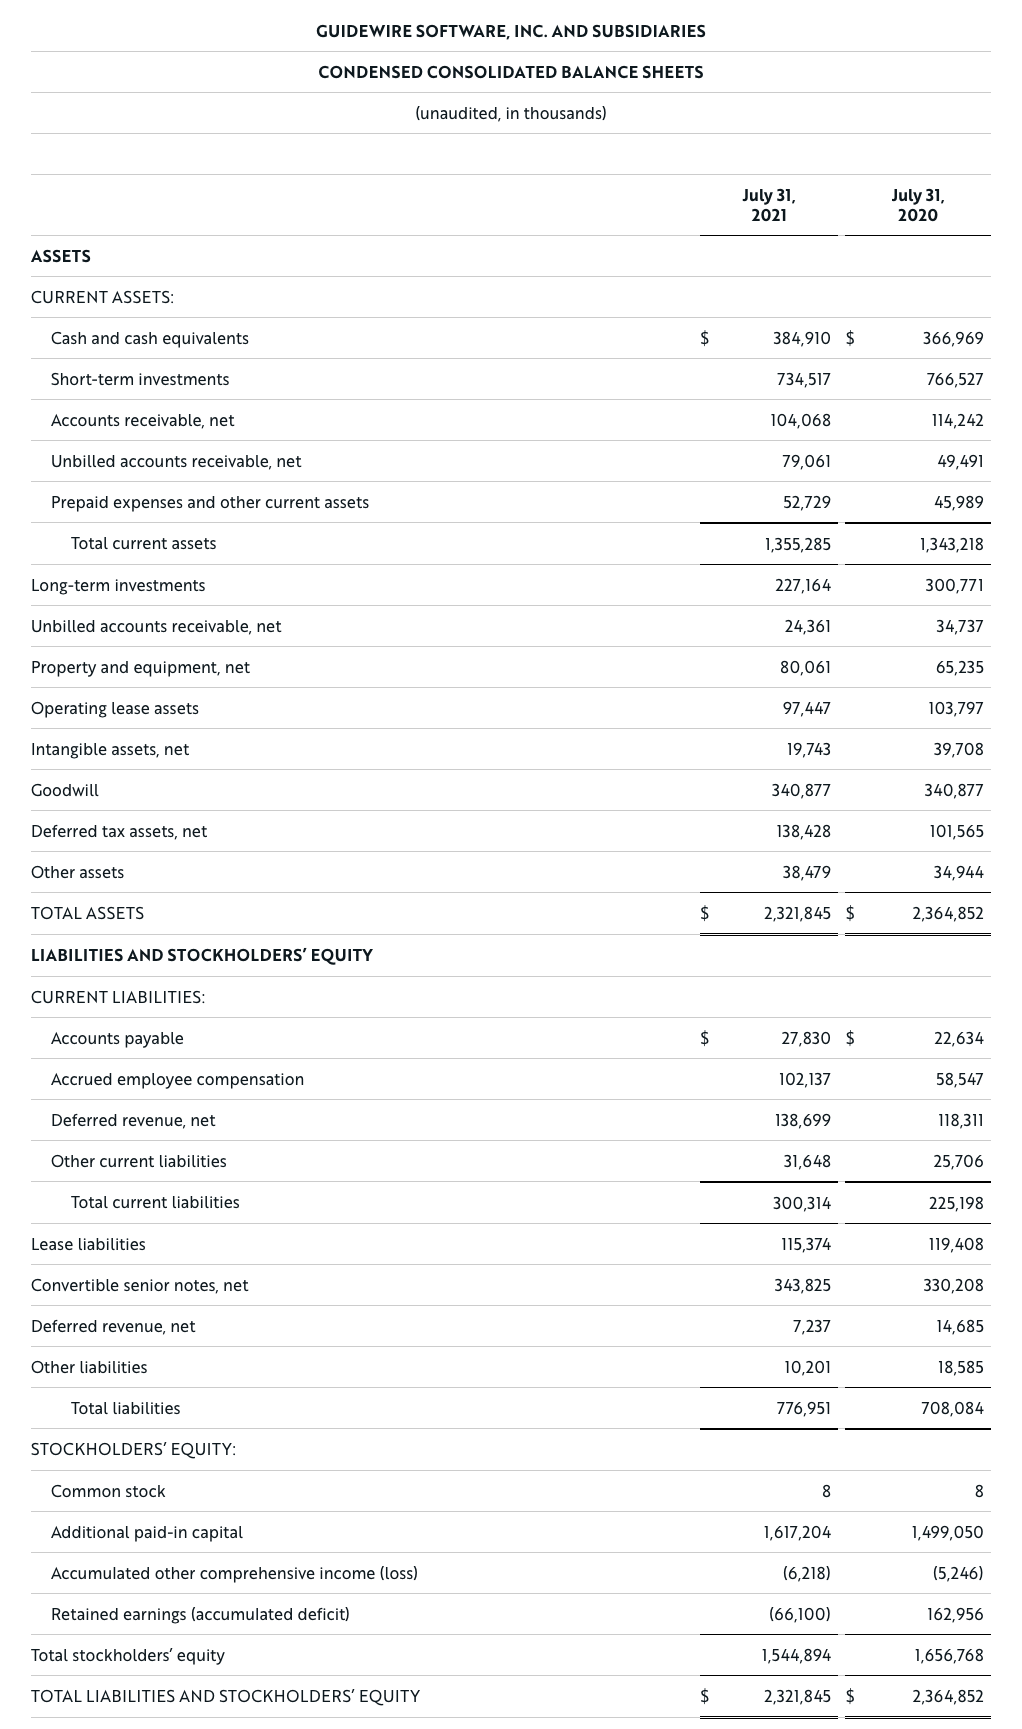 pr-20210902-earnings-table-01